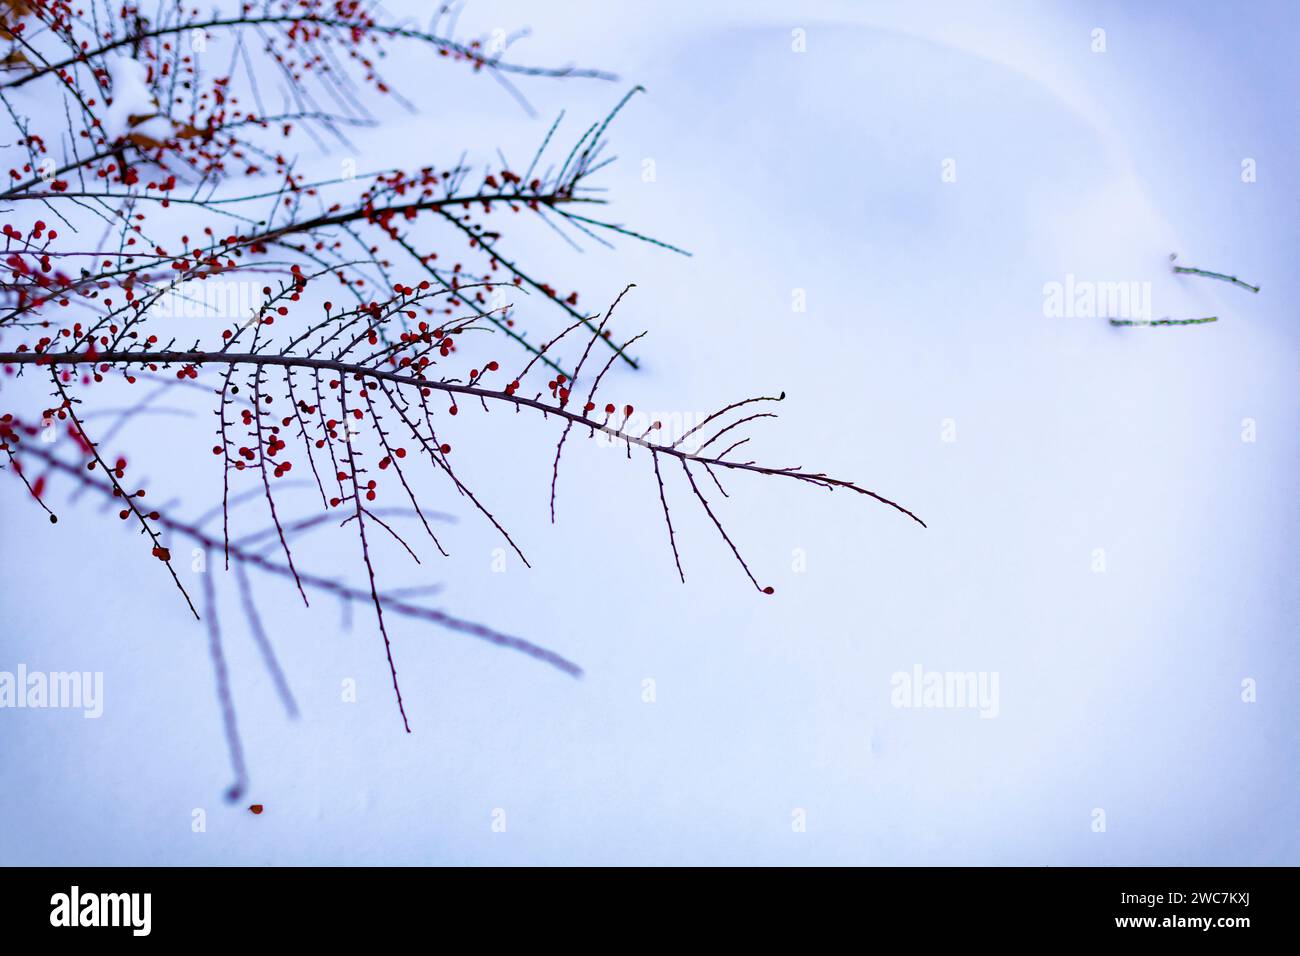 Cespuglio con bacche rosse in una nevicata. Scena invernale invernale. Messa a fuoco selettiva. Foto Stock